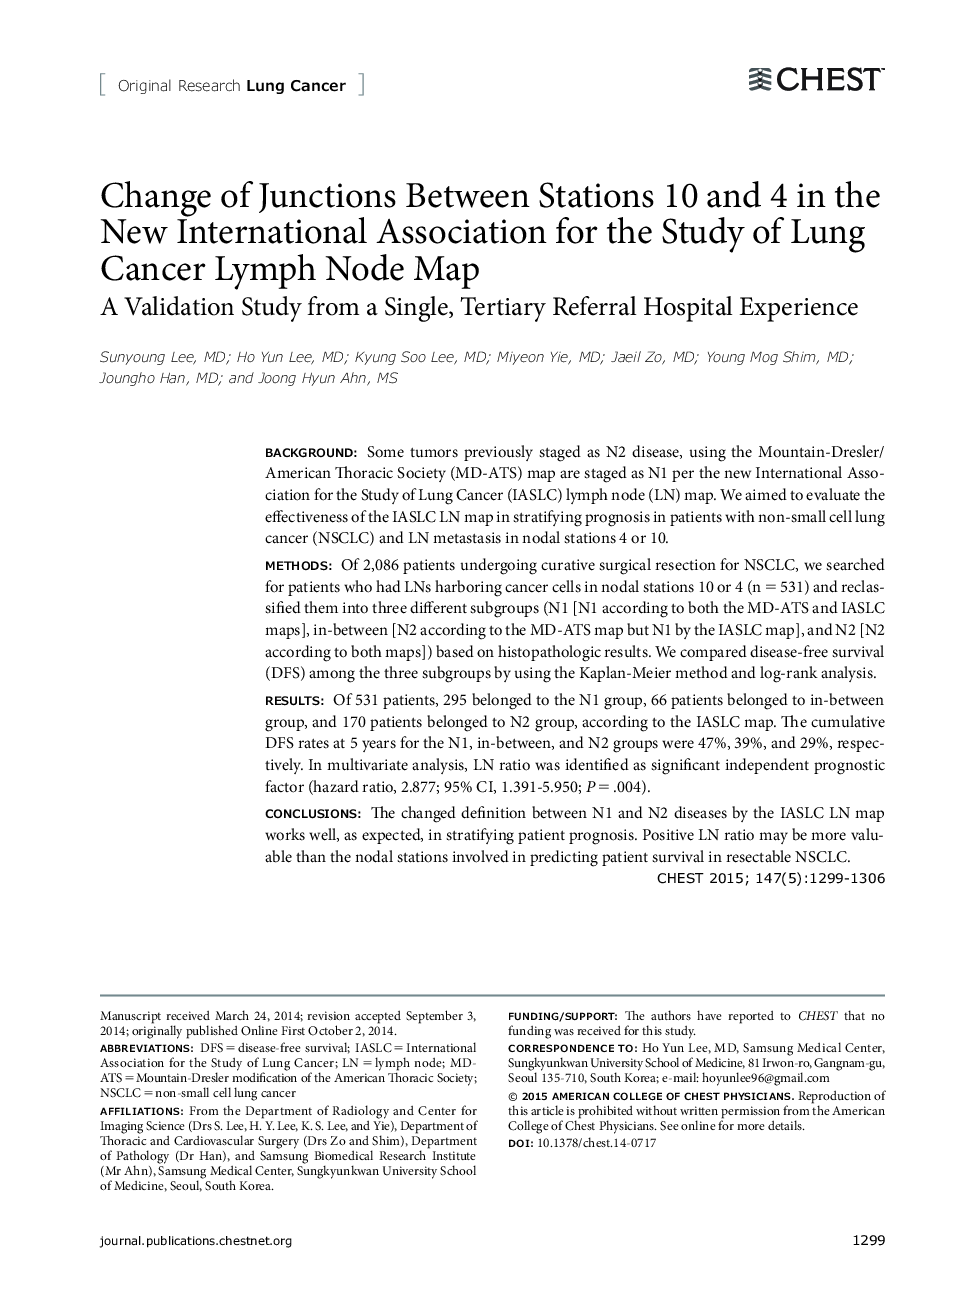 تغییر اتصالات بین ایستگاه های 10 و 4 در انجمن بین المللی جدید مطالعه نقشه های لنفاوی سرطان ریه 